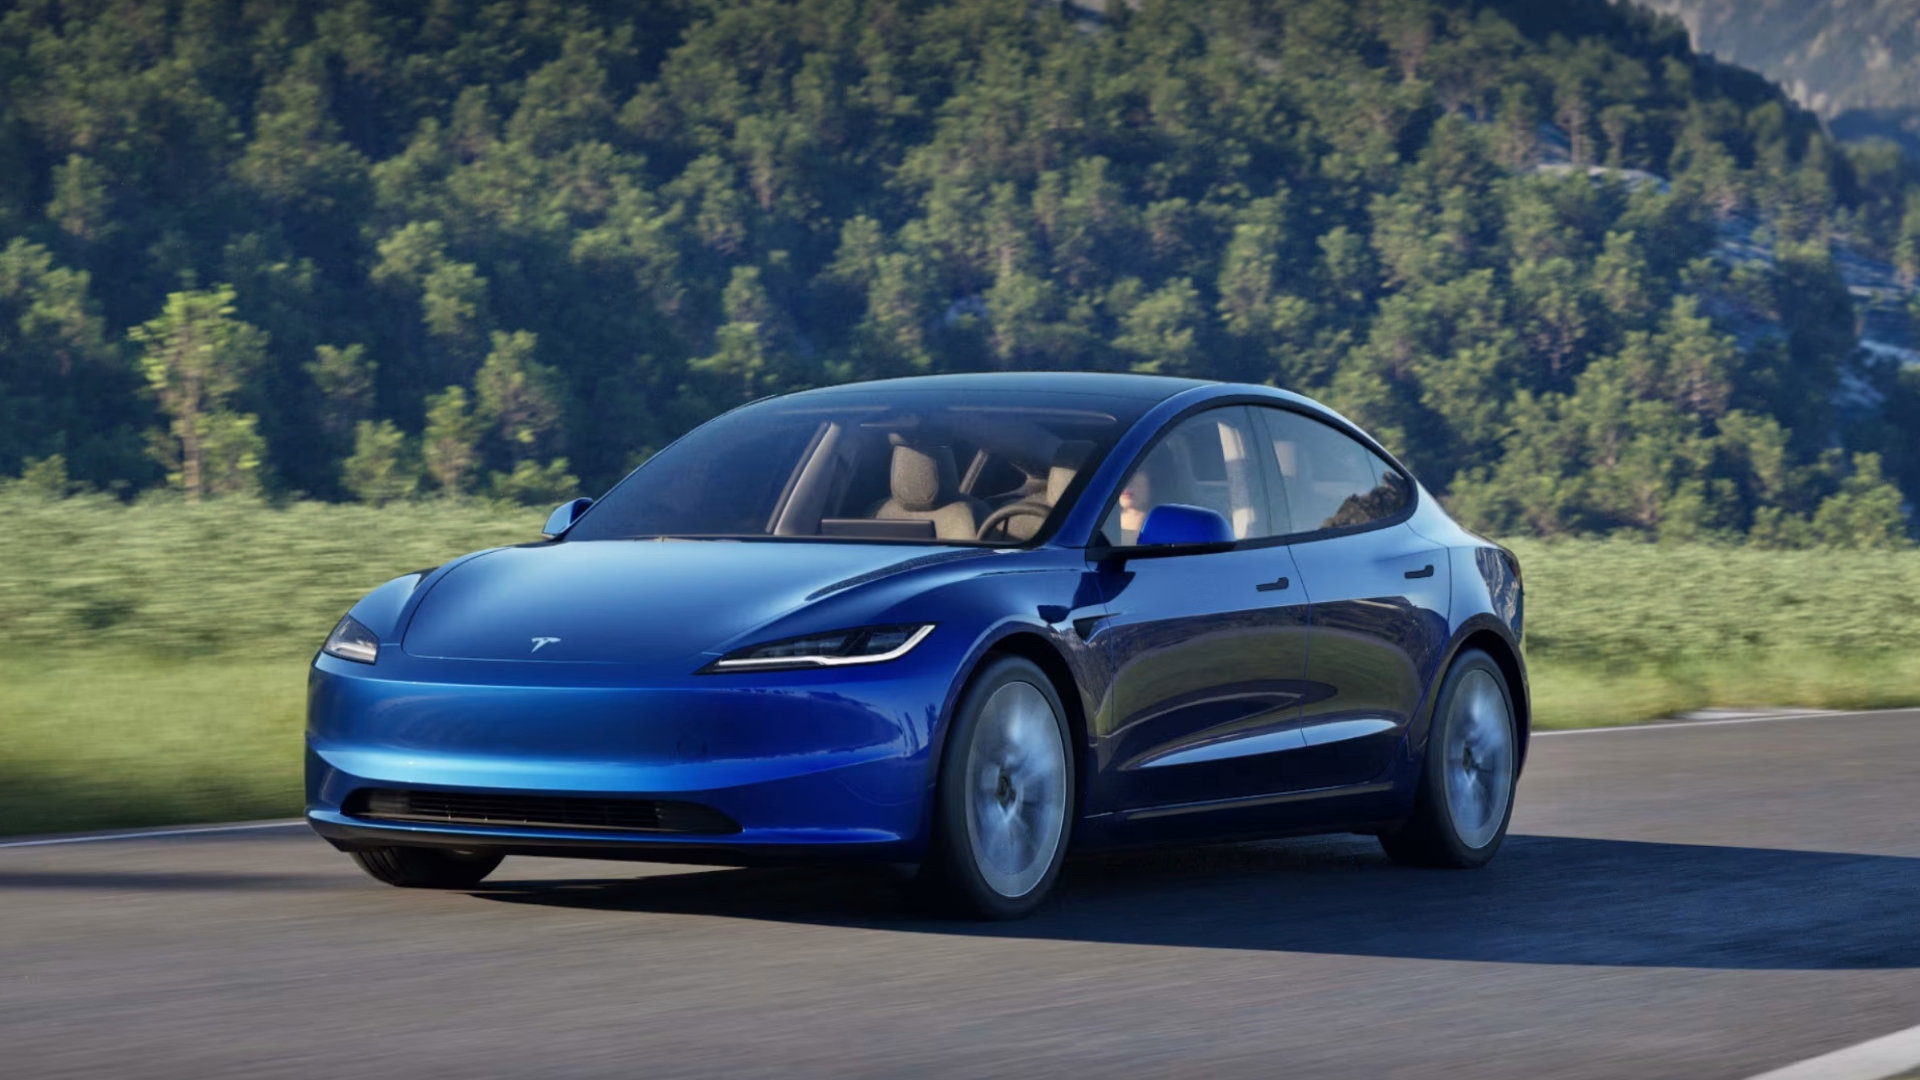 ADAC Test: Tesla Model 3 "Highland" bringt Verbesserungen und Kontroversen